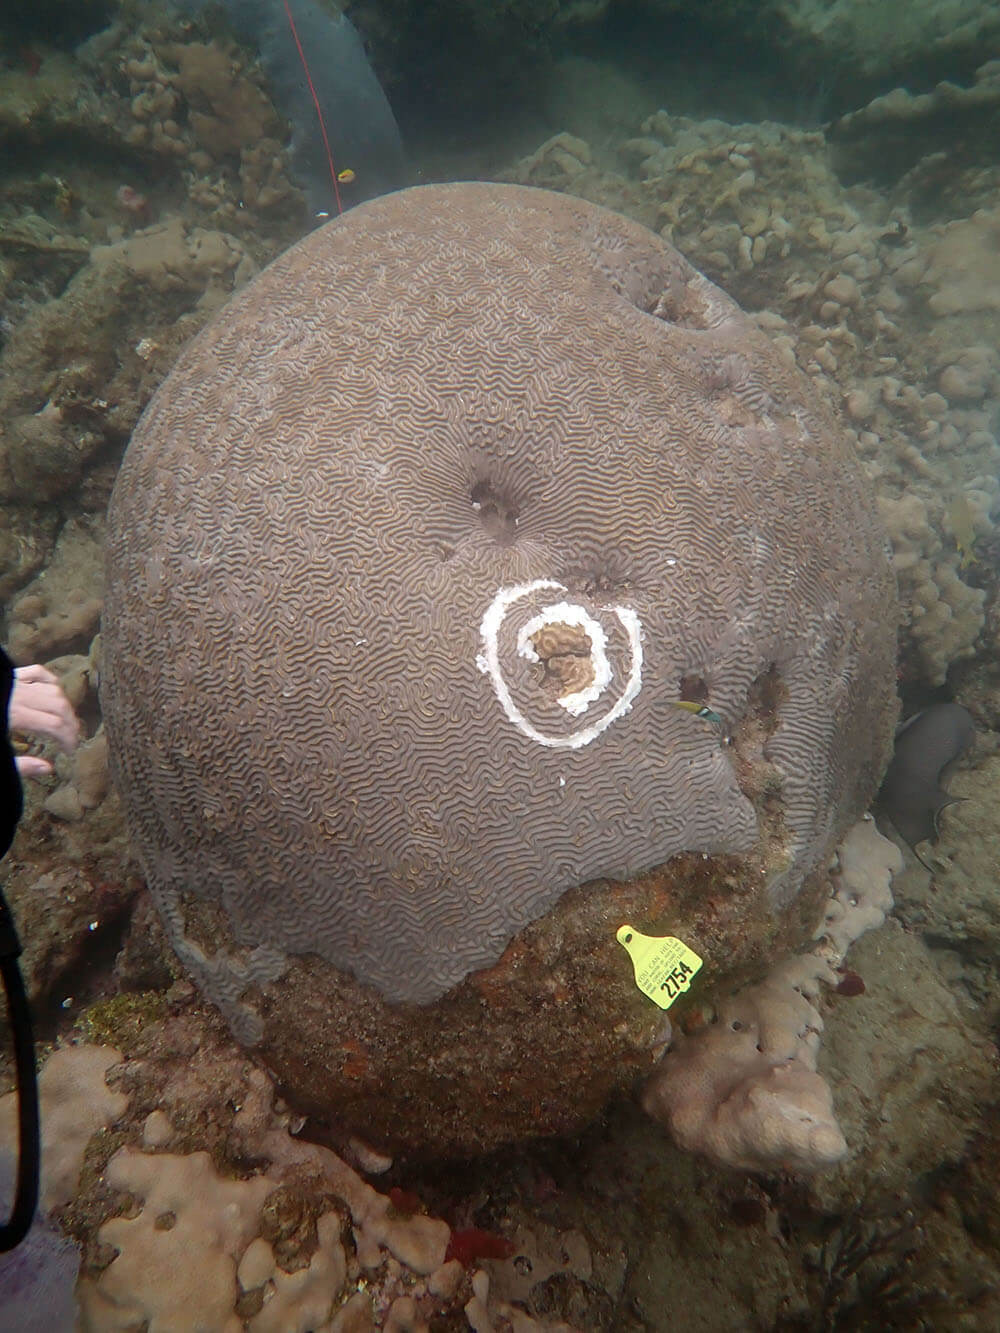 Diseased coral head